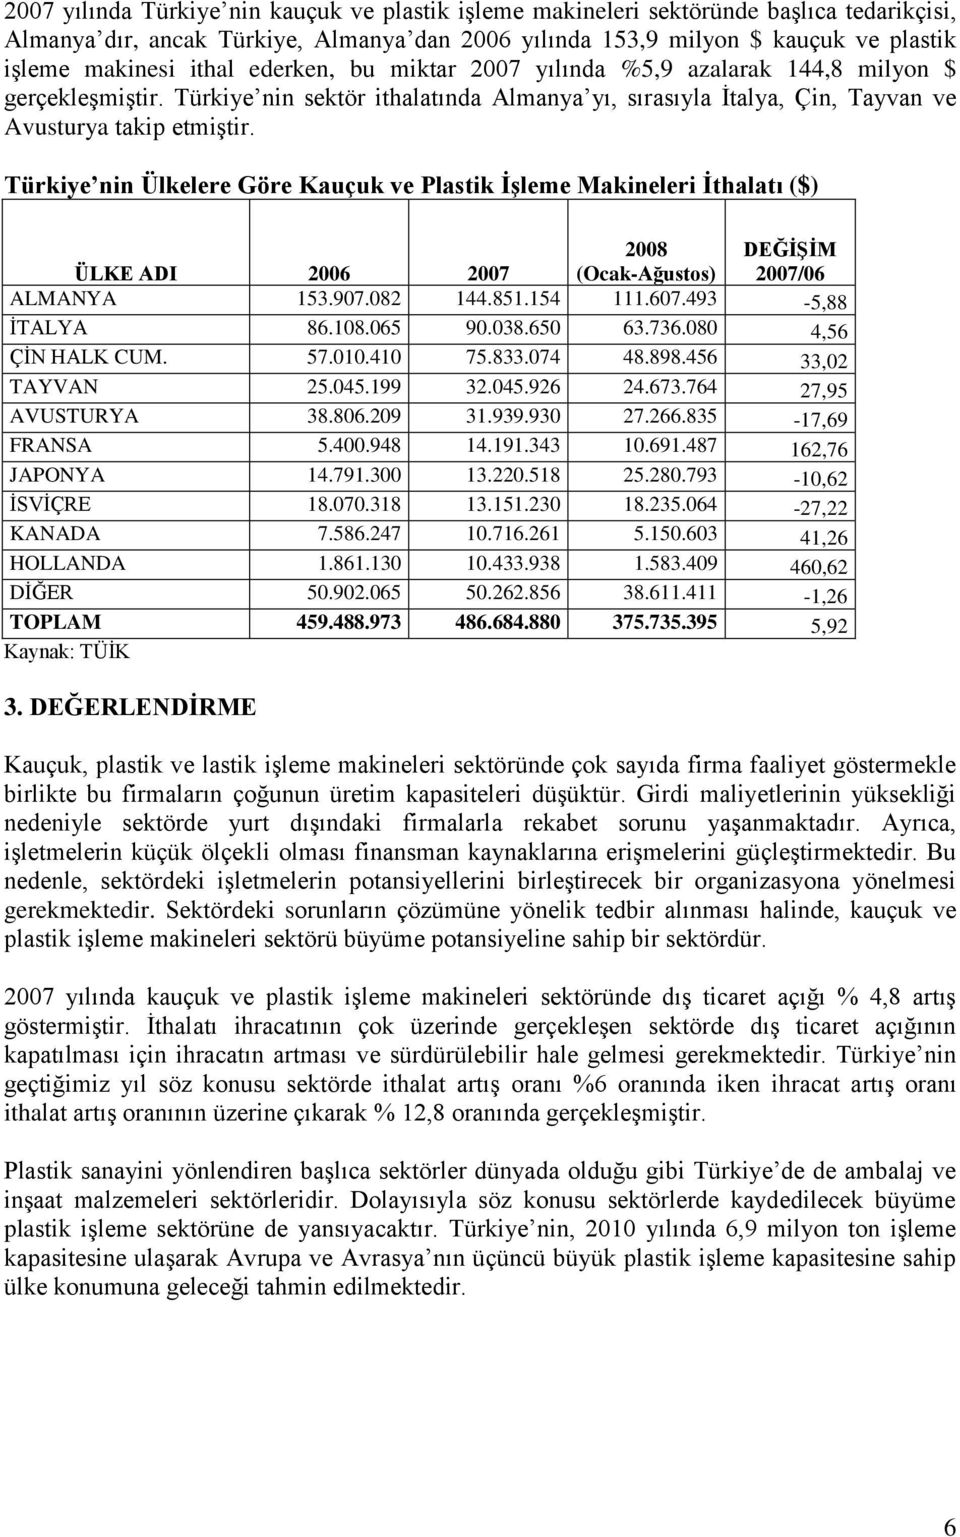 Türkiye nin Ülkelere Göre Kauçuk ve Plastik ĠĢleme Makineleri Ġthalatı ($) ÜLKE ADI 2006 2007 (Ocak-Ağustos) DEĞĠġĠM 2007/06 ALMANYA 153.907.082 144.851.154 111.607.493-5,88 ĠTALYA 86.108.065 90.038.